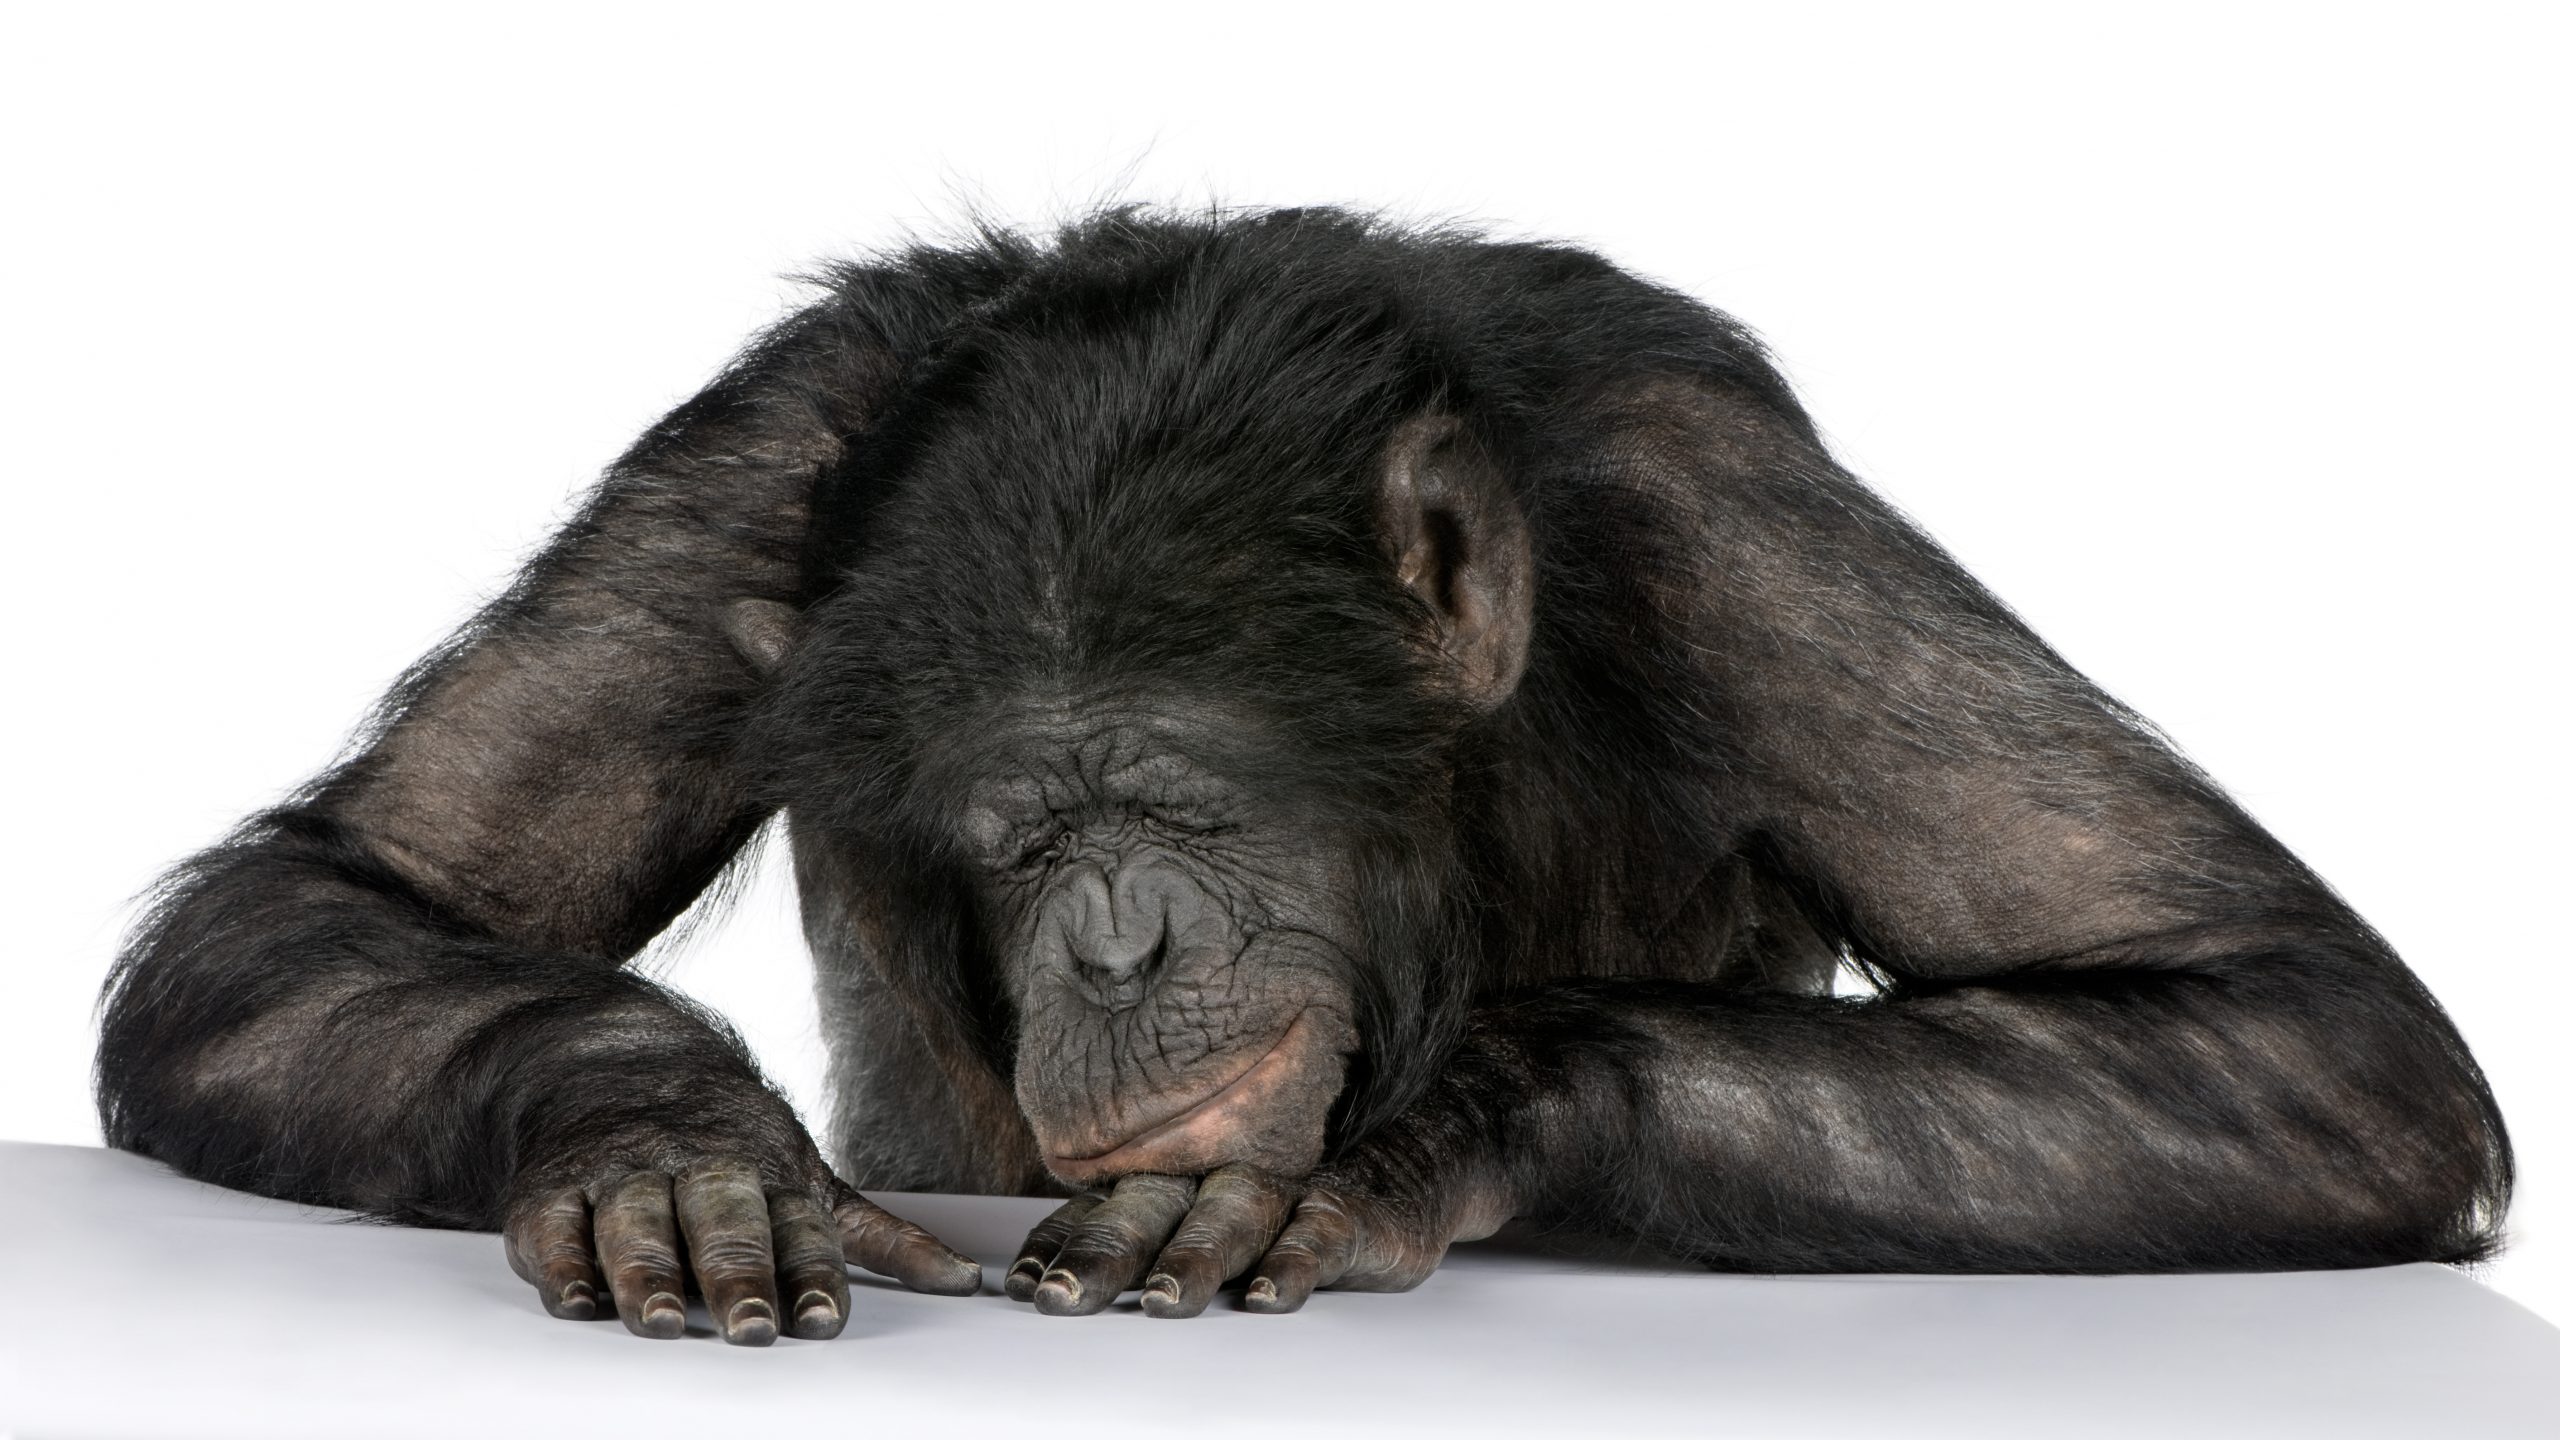 Mono durmiendo en un escritorio; entre chimpancé y Bonobo (20 años).